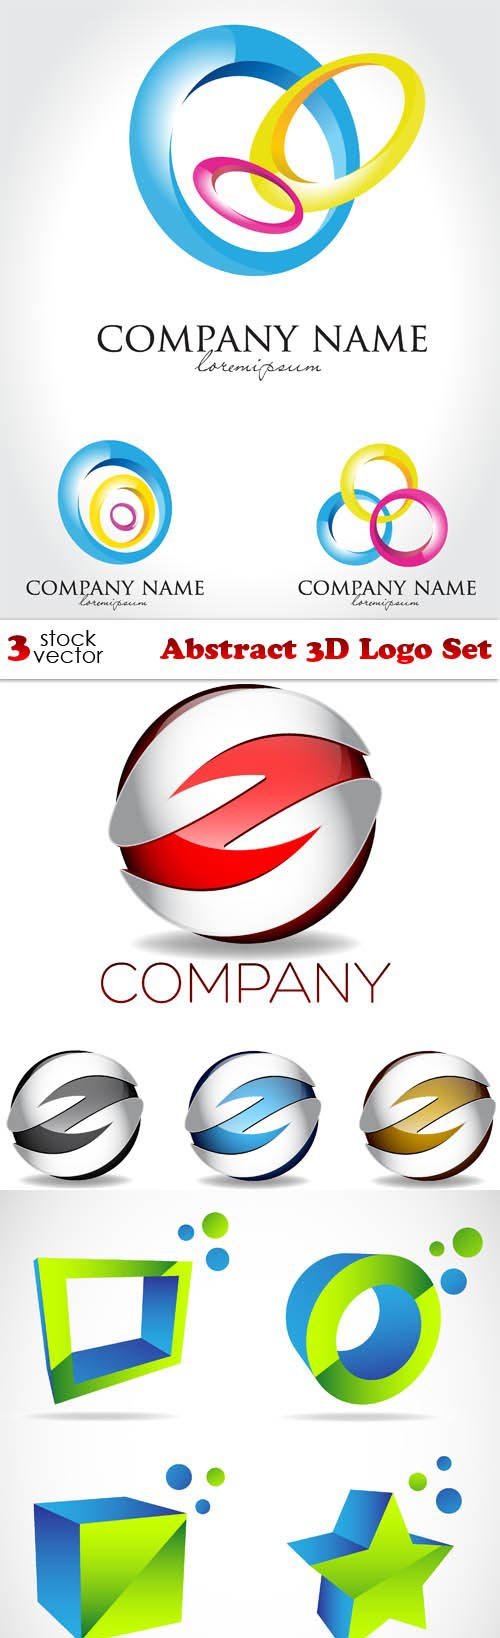 Vectors - Abstract 3D Logo Set